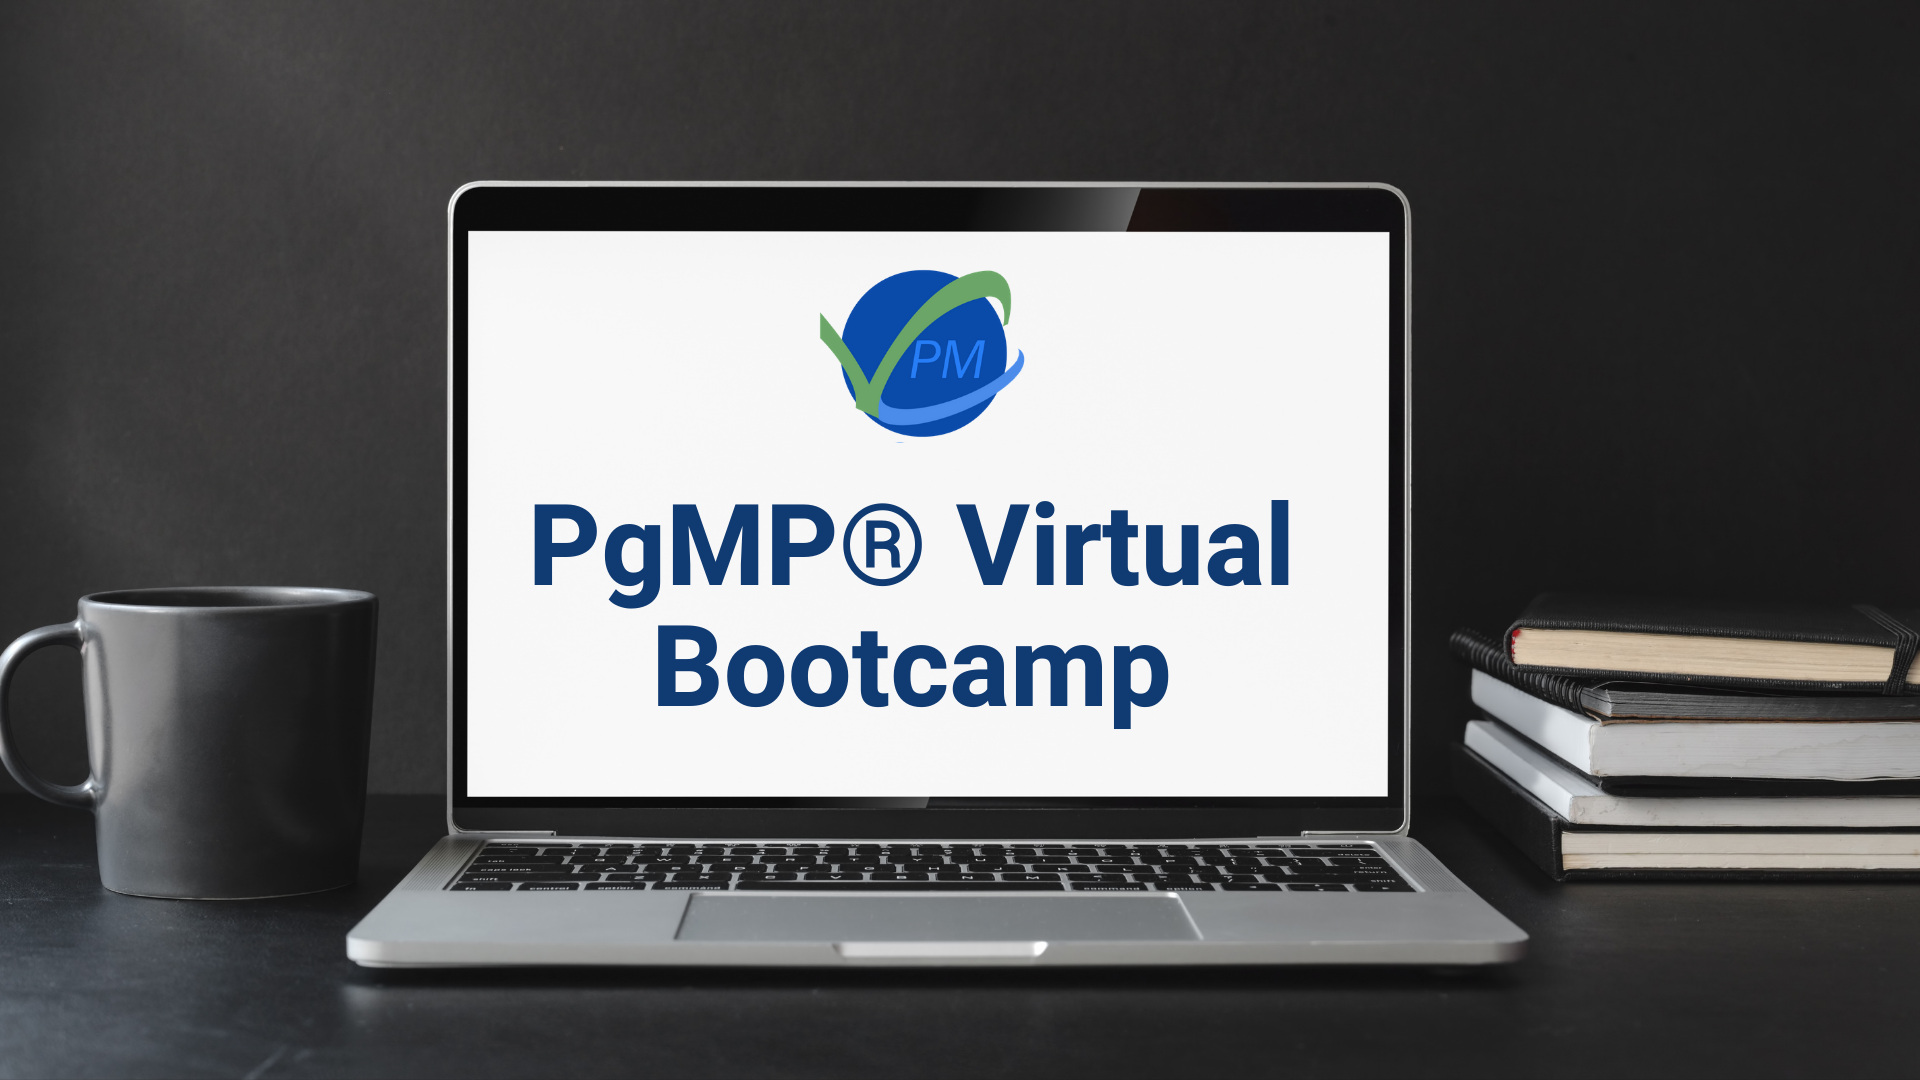 PgMP | Program Management | Training | 2022 – vCare Project Management, Online Event